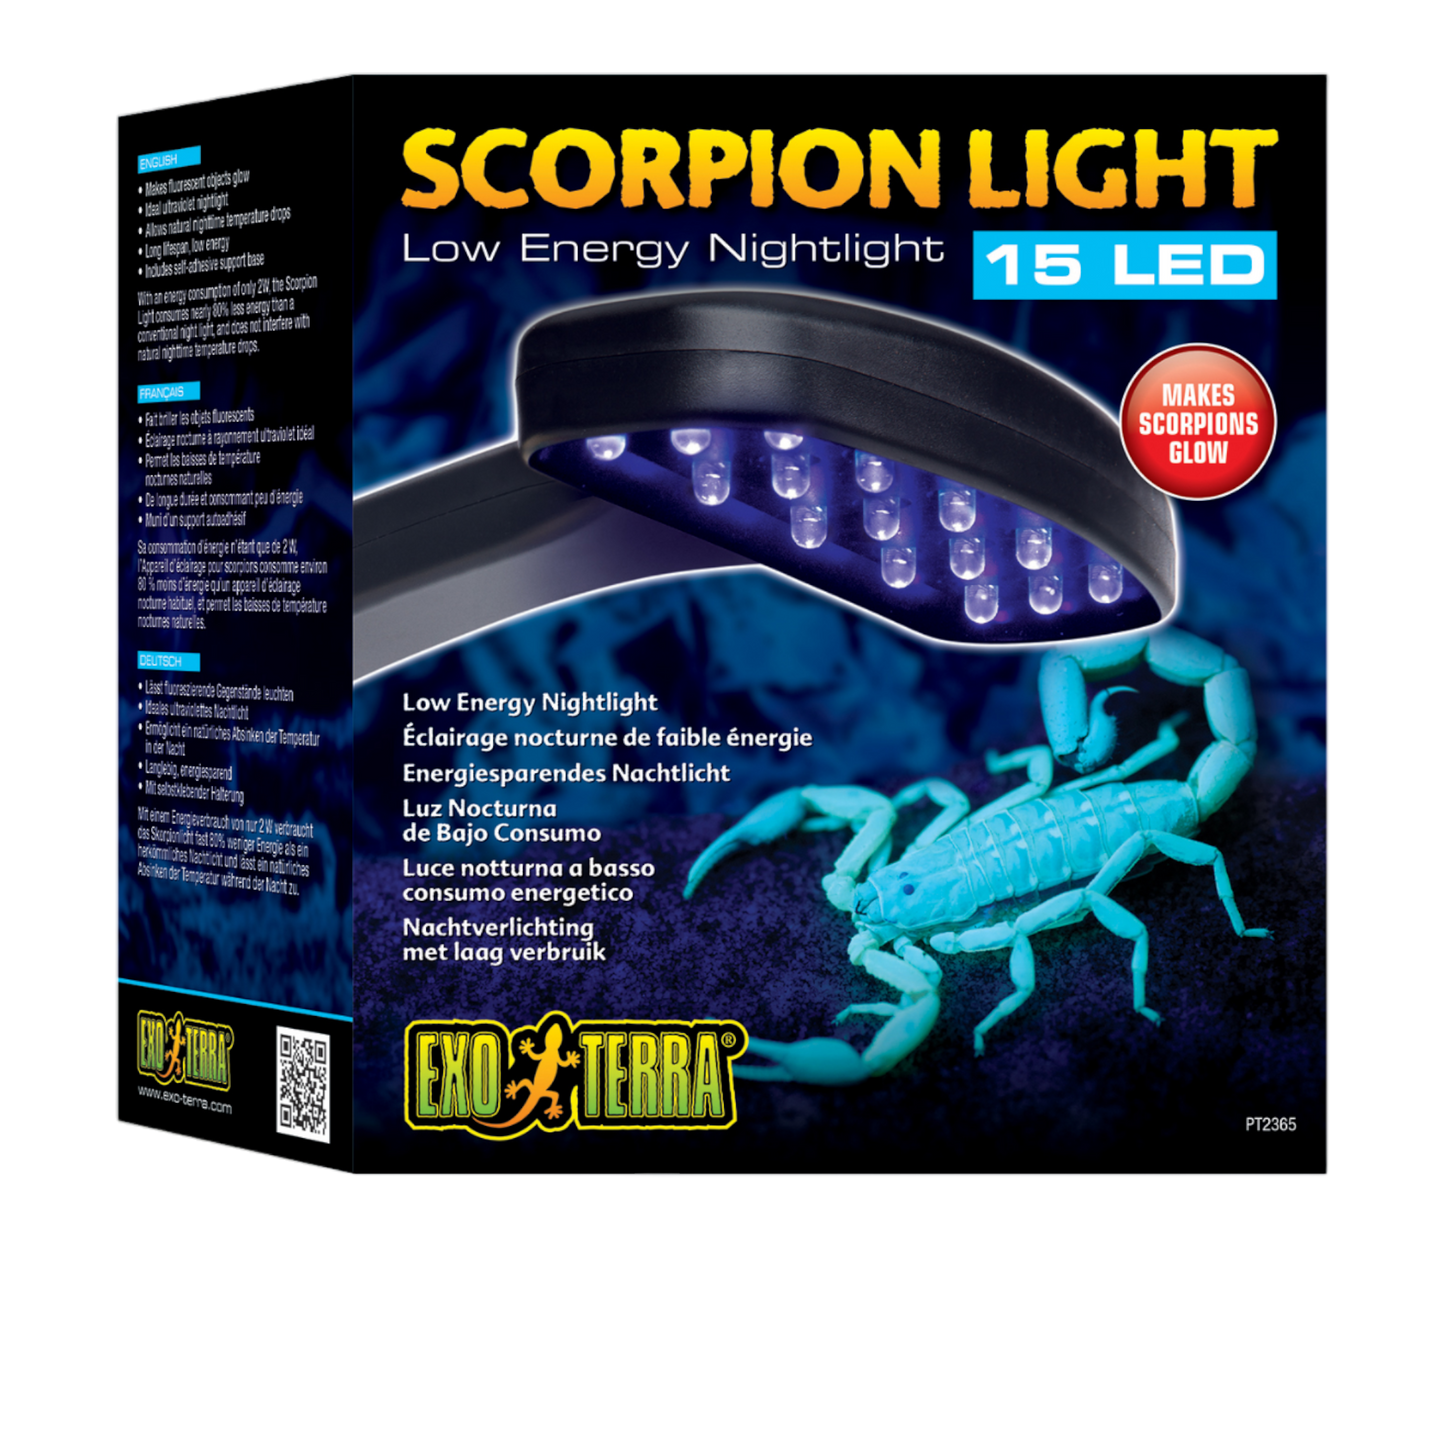  Exo Terra Skorpionlicht  verleiht der Haltung von Wirbellosen eine ganz neue Dimension. Das Skorpionlicht strahlt ein weiches ultraviolettes Licht aus, das den UV-Strahlen ähnelt, die von der Oberfläche des Mondes reflektiert werden.